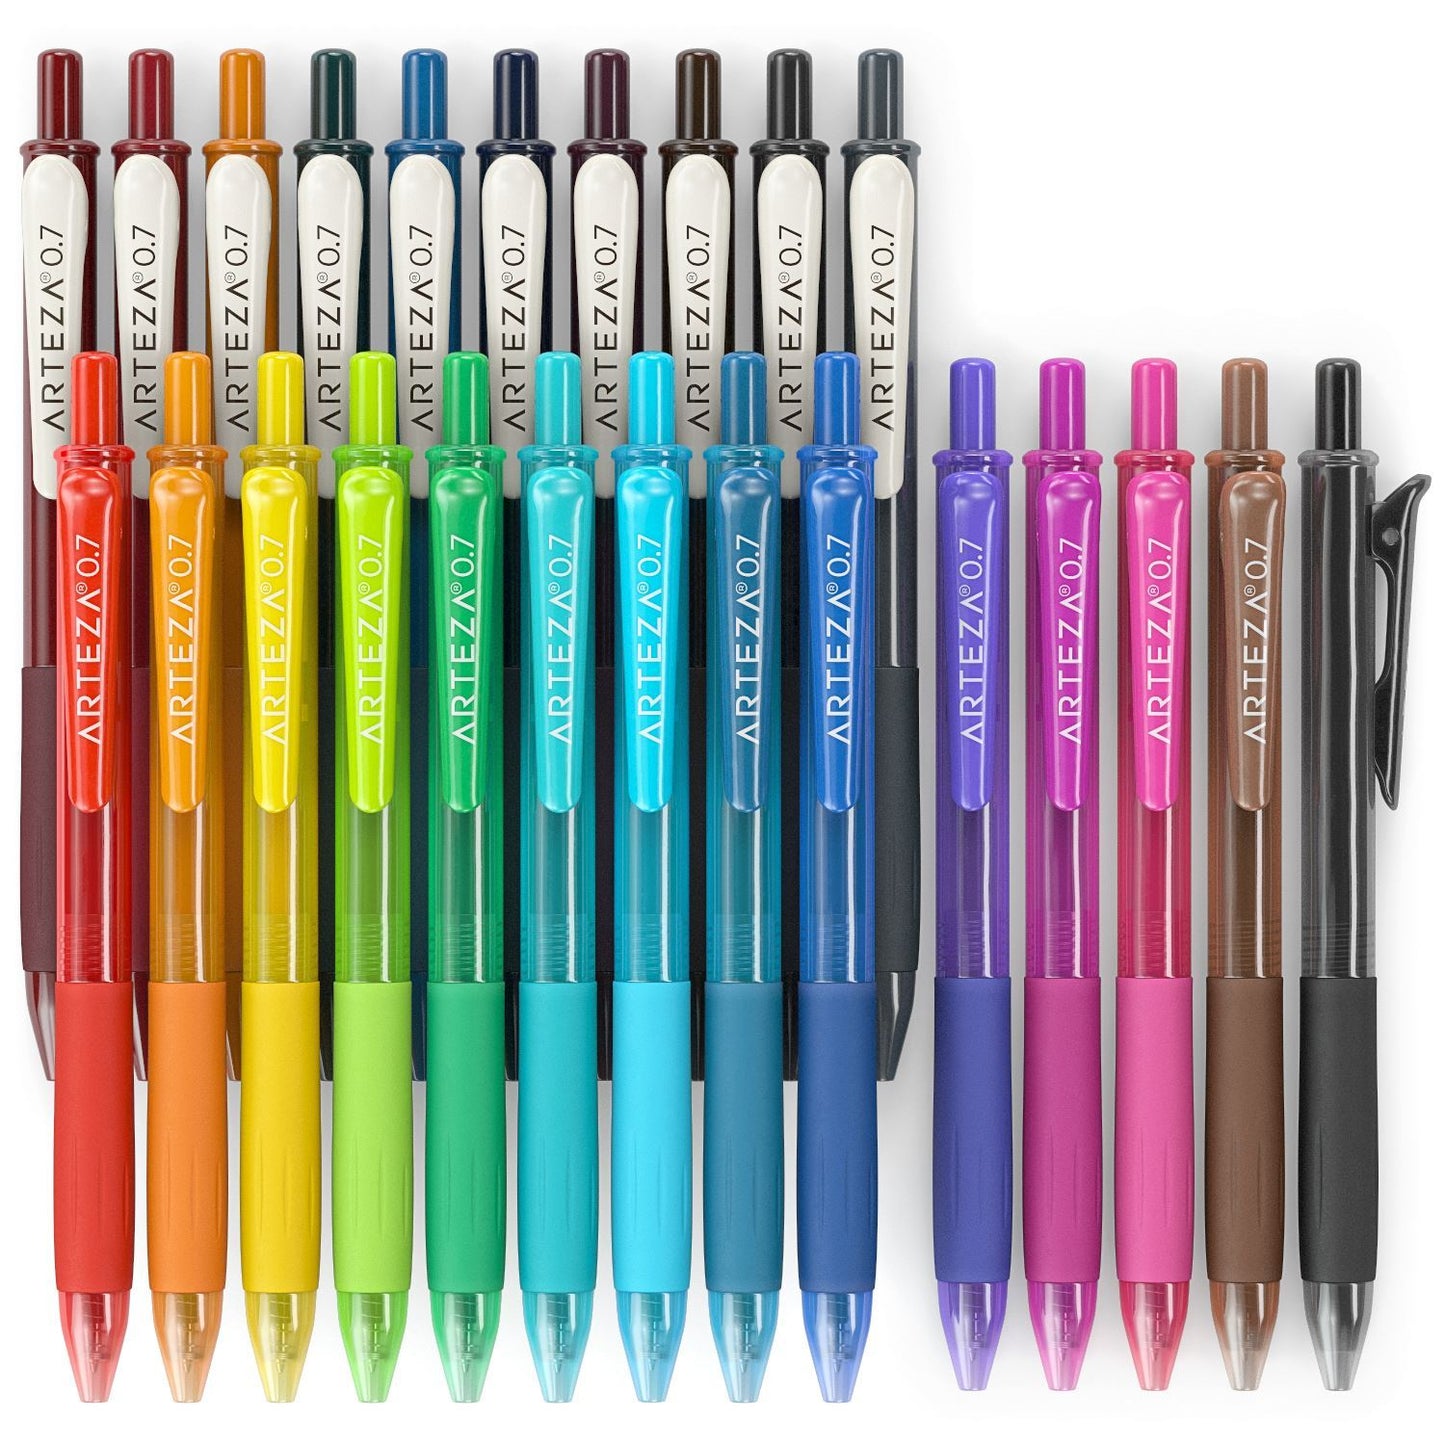 https://arteza.com/cdn/shop/products/retractable-gel-ink-pens-vintage-bright-colors-set-of-24_Th42IODJ.jpg?v=1668718029&width=1445